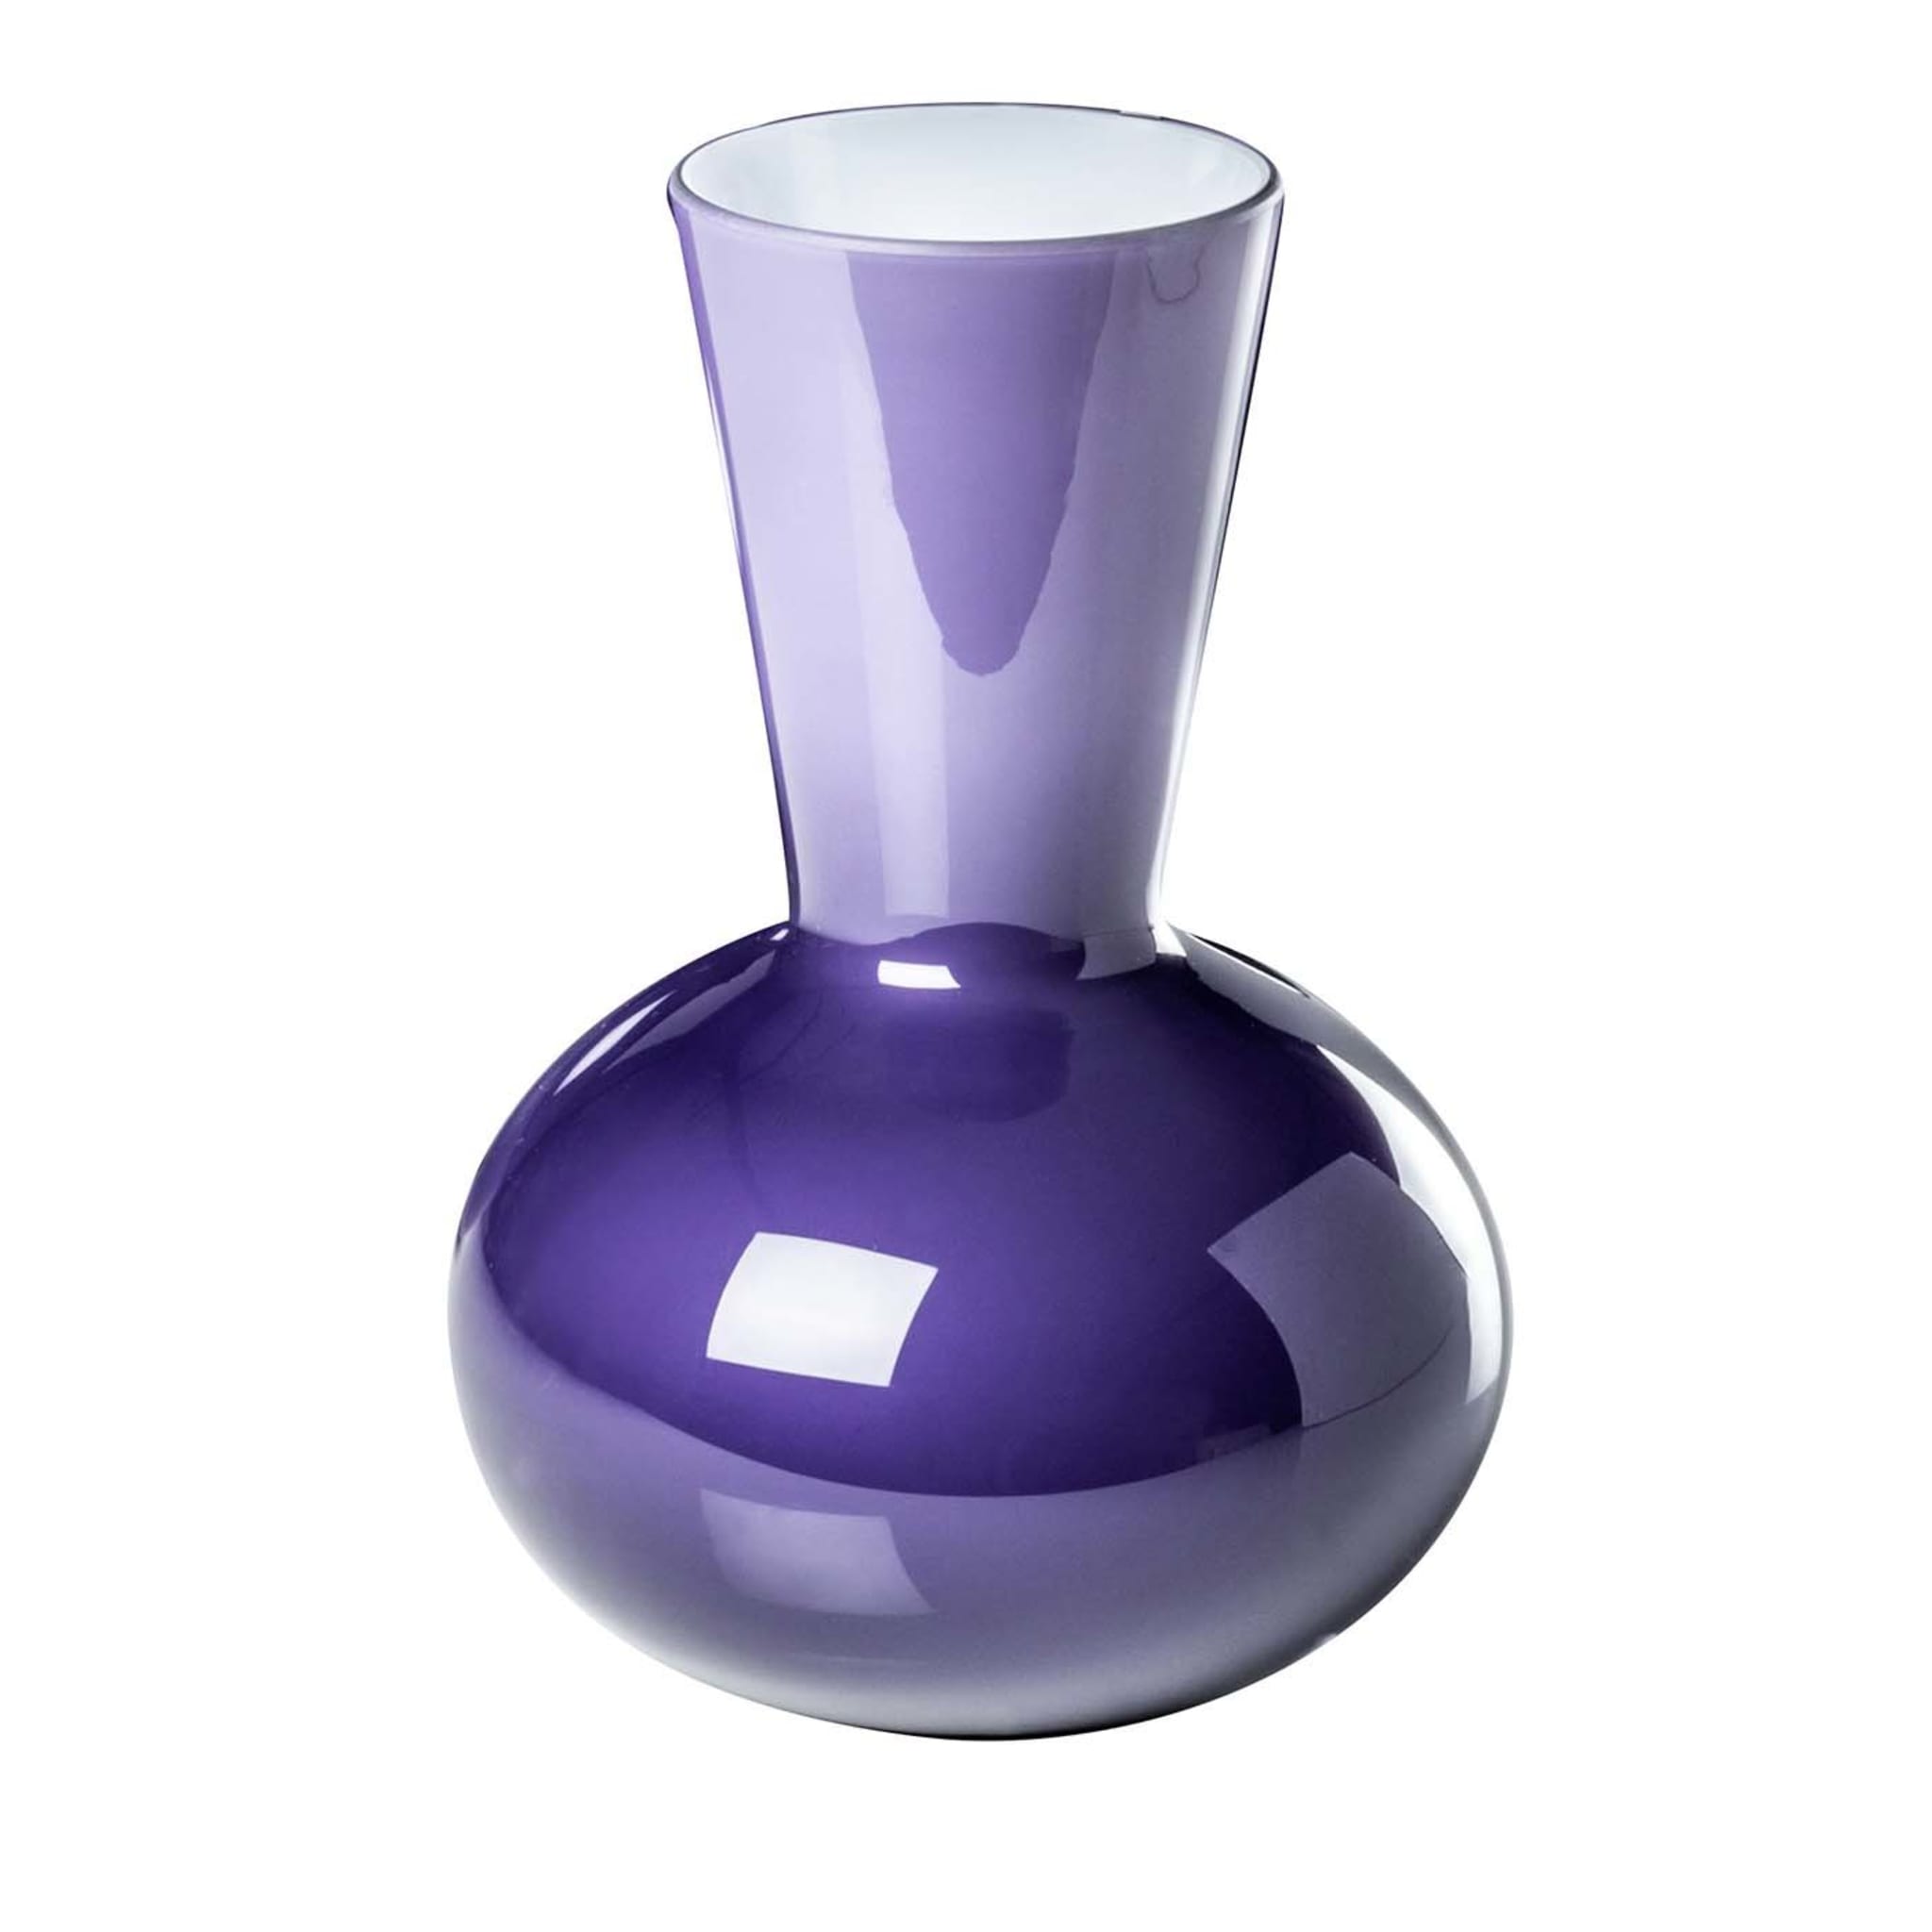 Idria Purple Vase by Paolo Venini - Main view